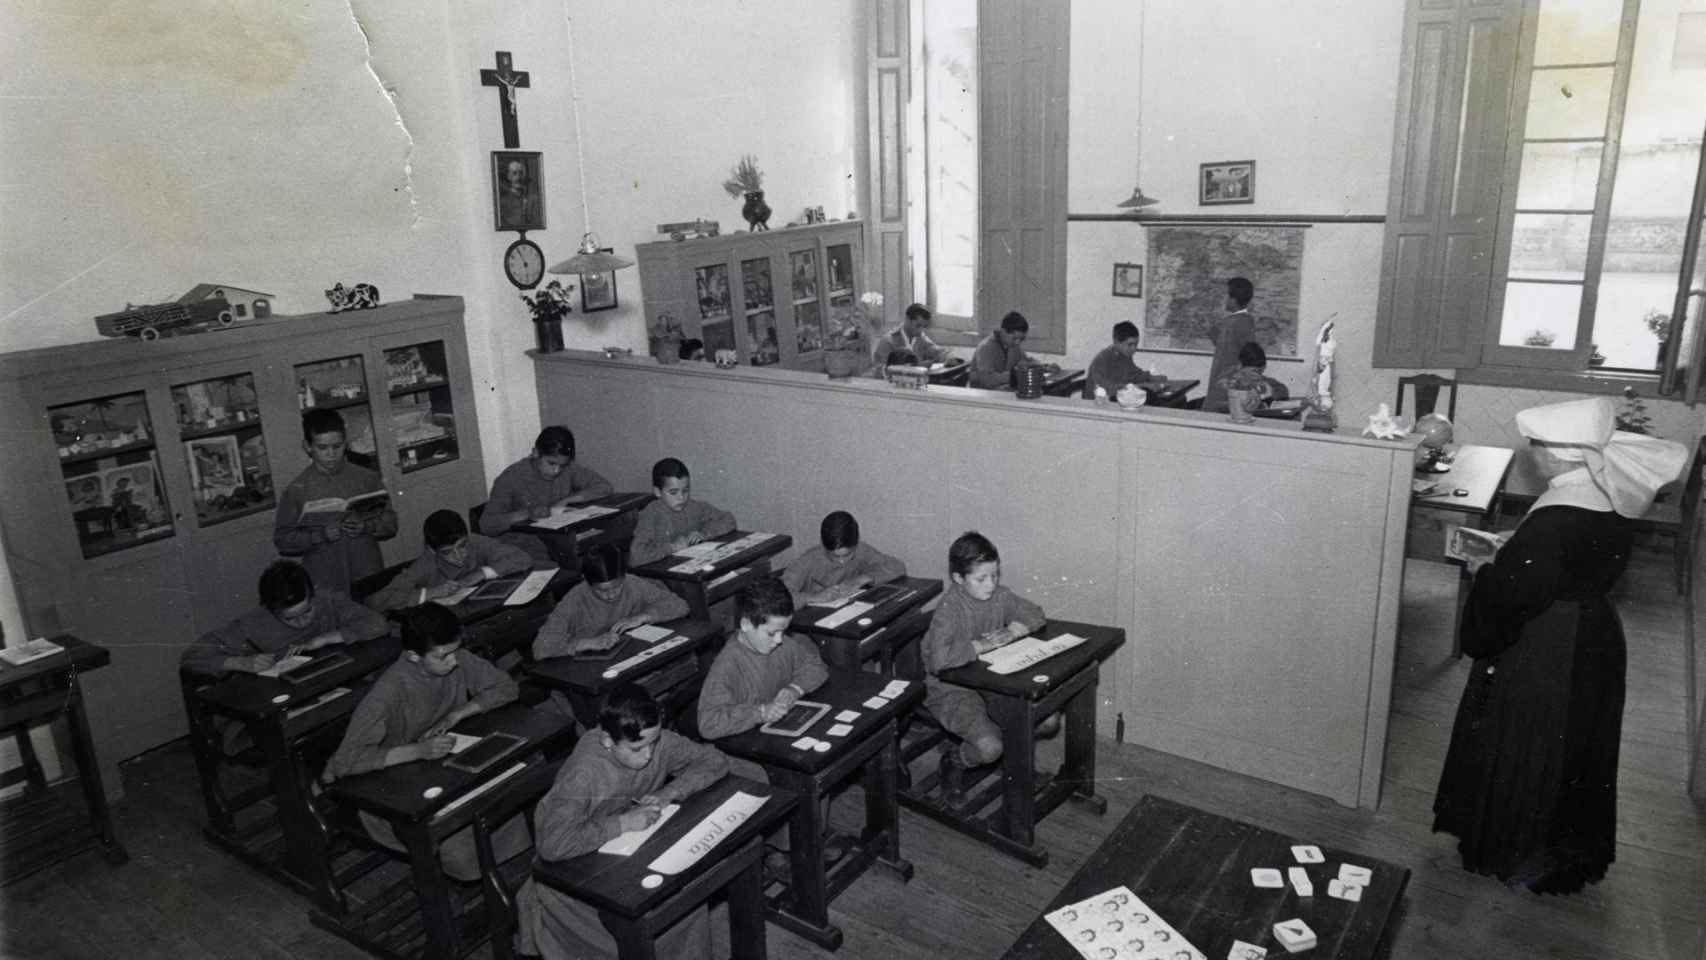 Niños en una escuela en la posguerra.